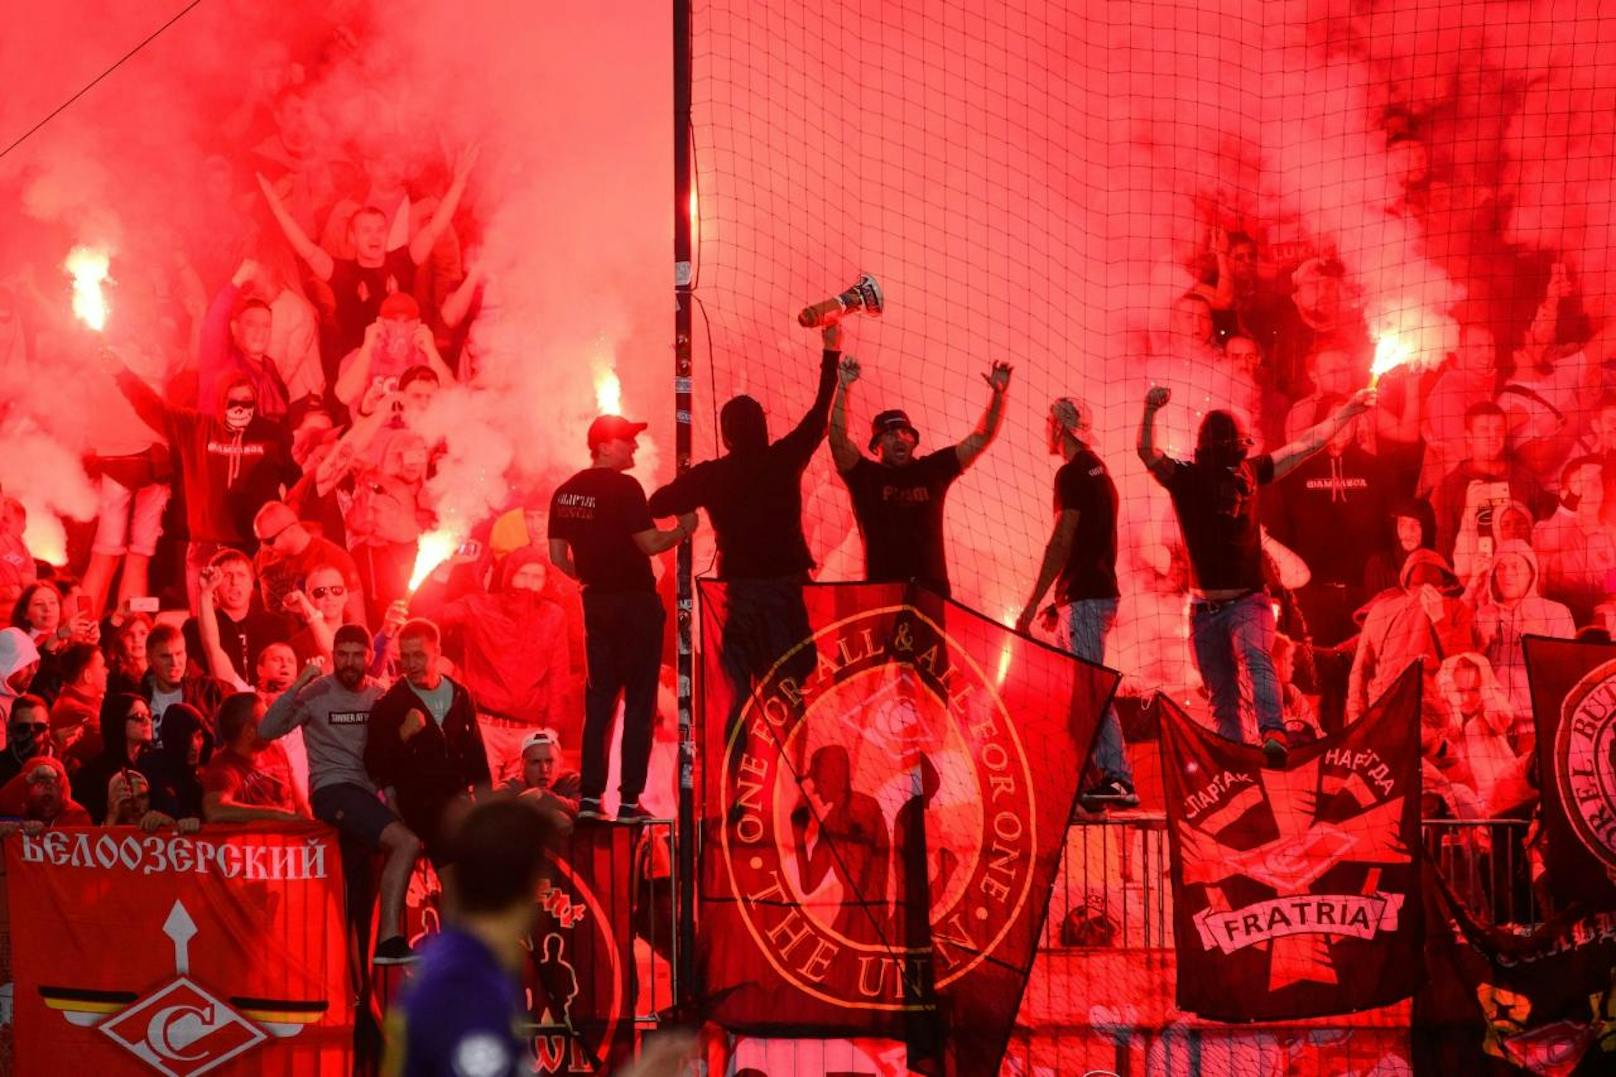 Spartak-Moskau-Fans zündelten in Maribor